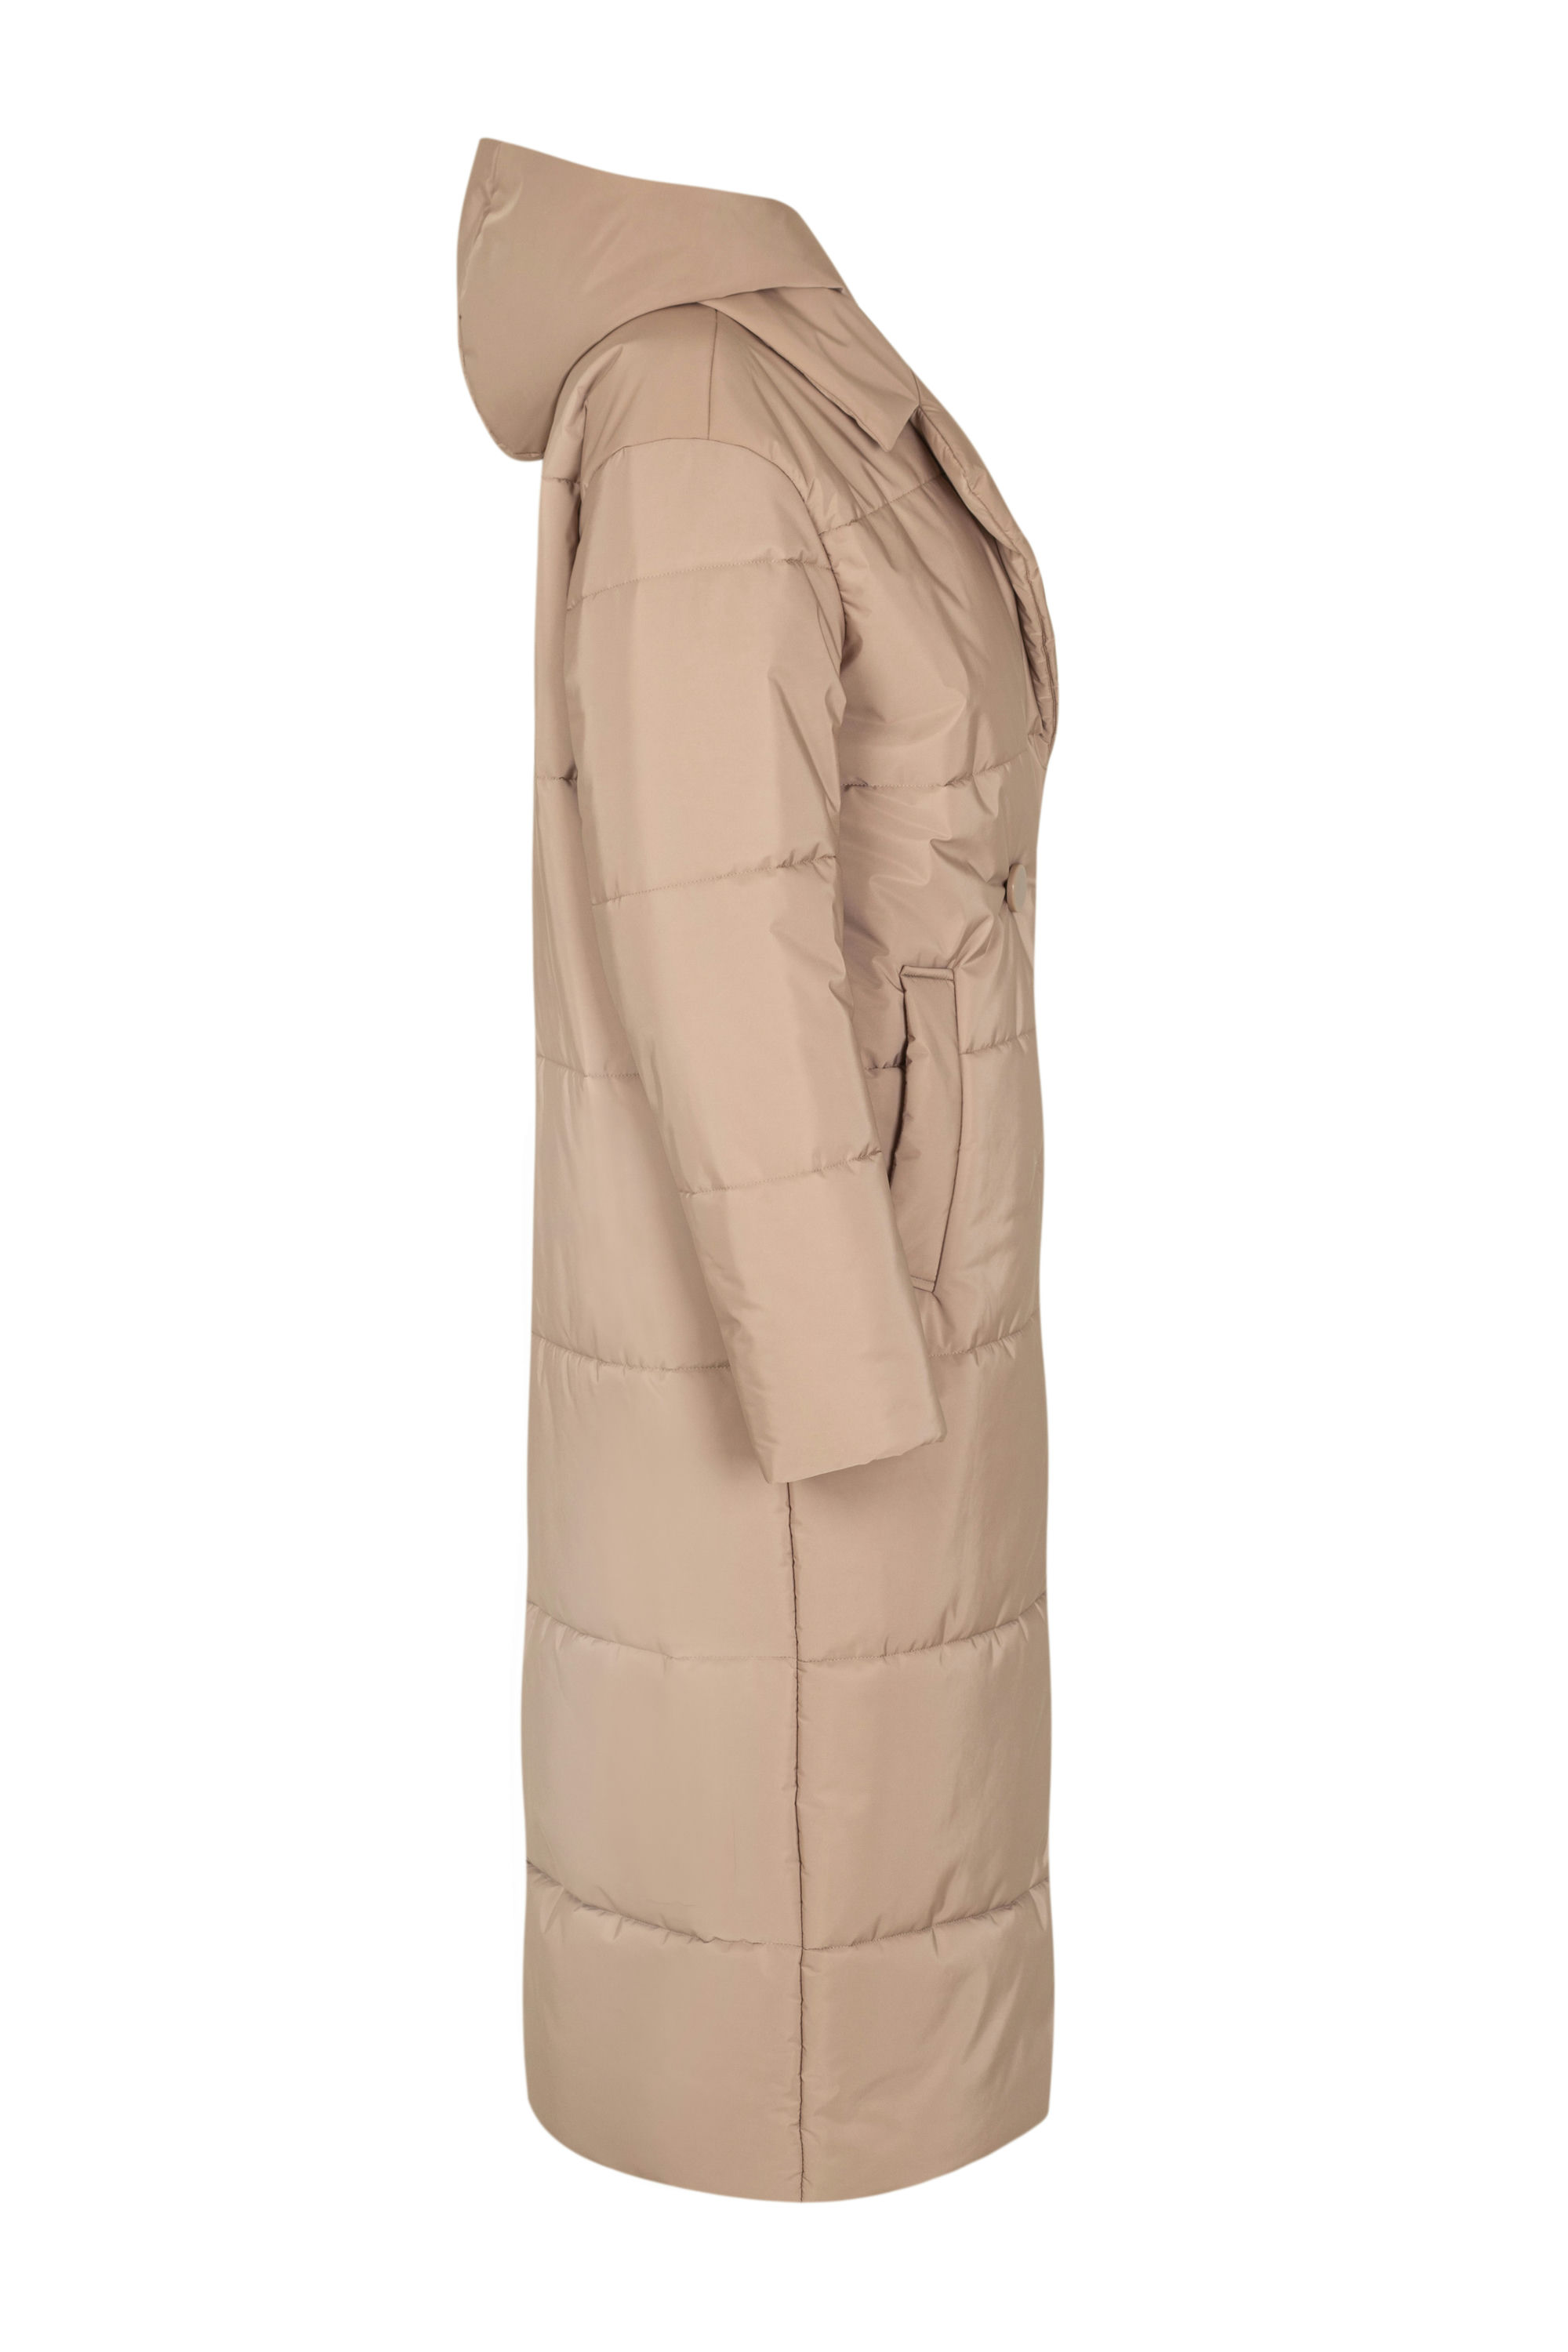 Пальто женское плащевое утепленное 5-12374-1. Фото 2.